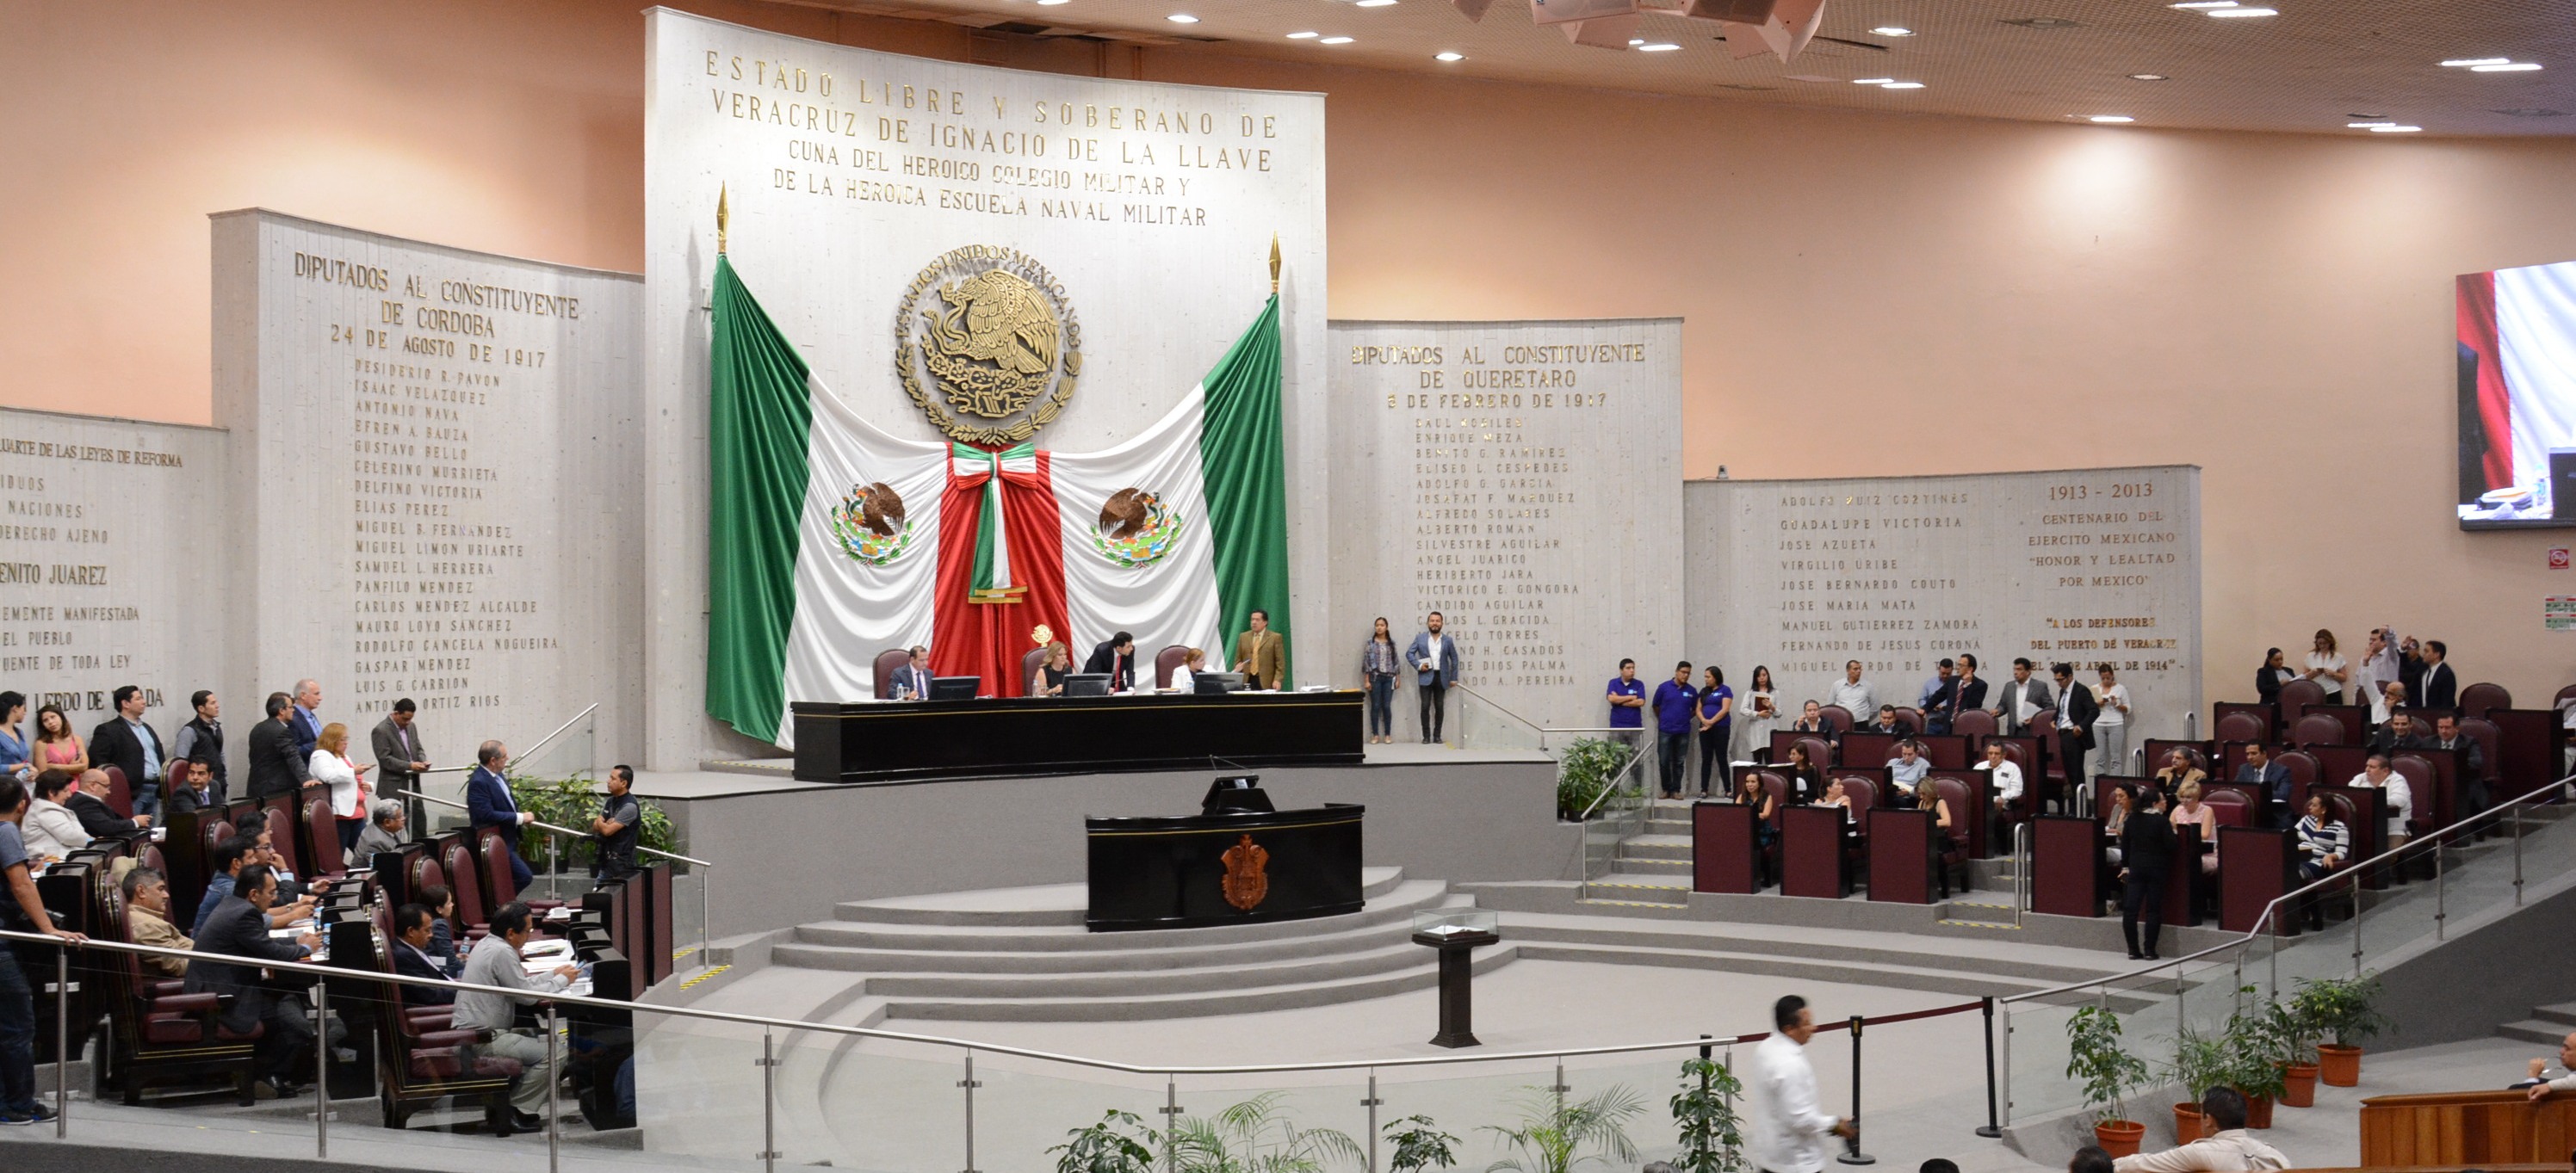 El 15 de noviembre se presentará el sexto y último Informe de Gobierno en Veracruz